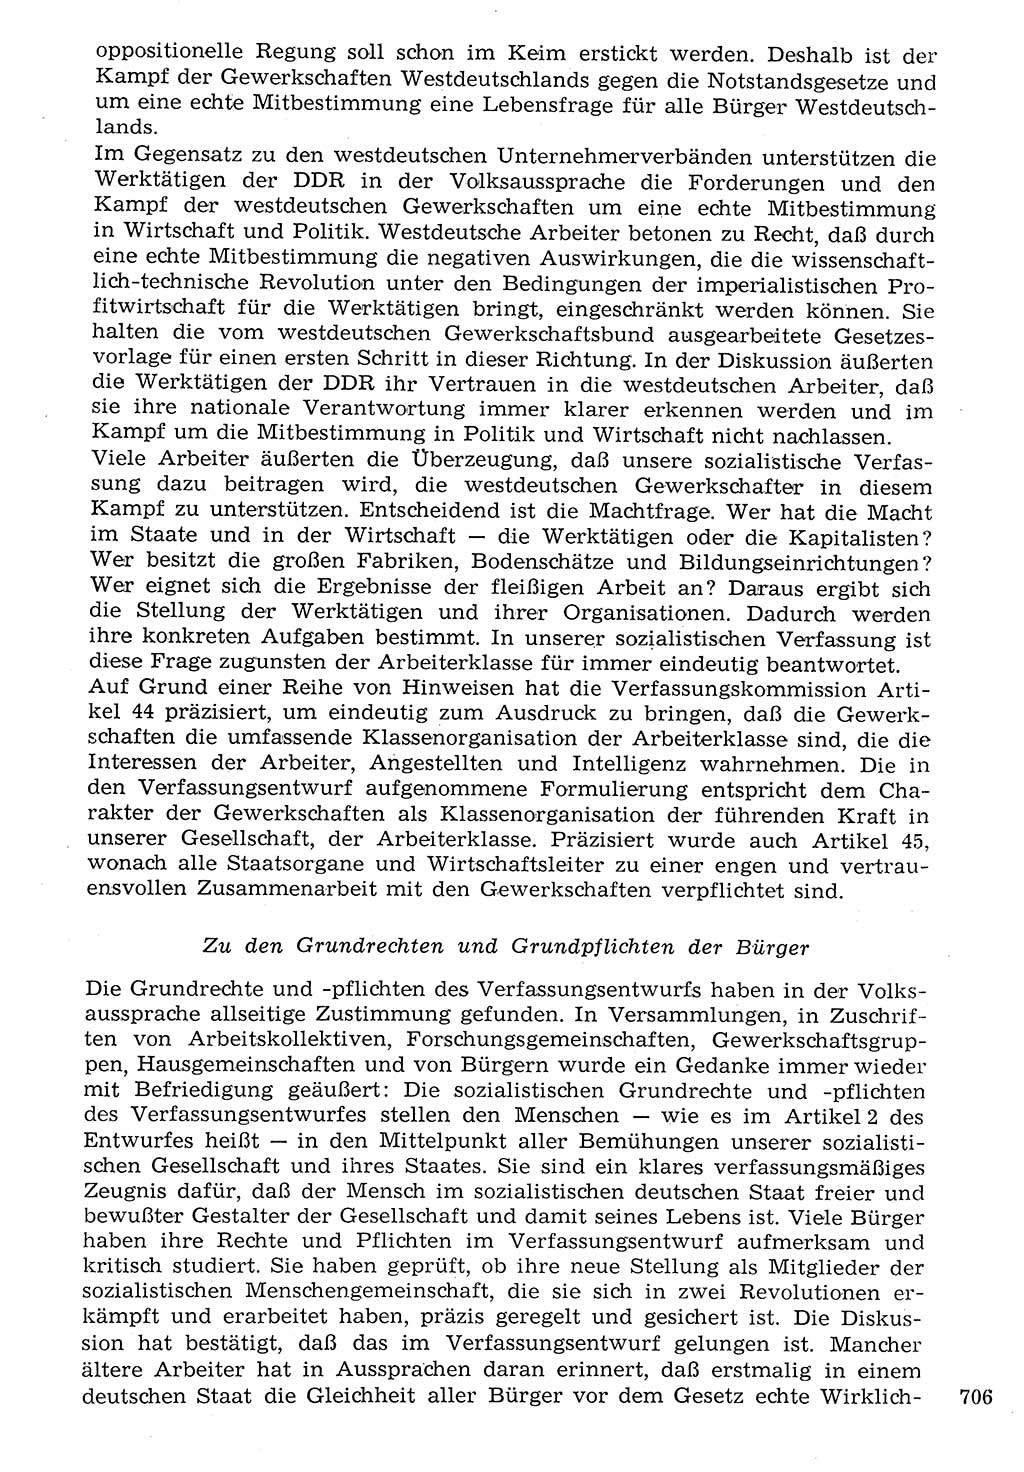 Staat und Recht (StuR), 17. Jahrgang [Deutsche Demokratische Republik (DDR)] 1968, Seite 706 (StuR DDR 1968, S. 706)